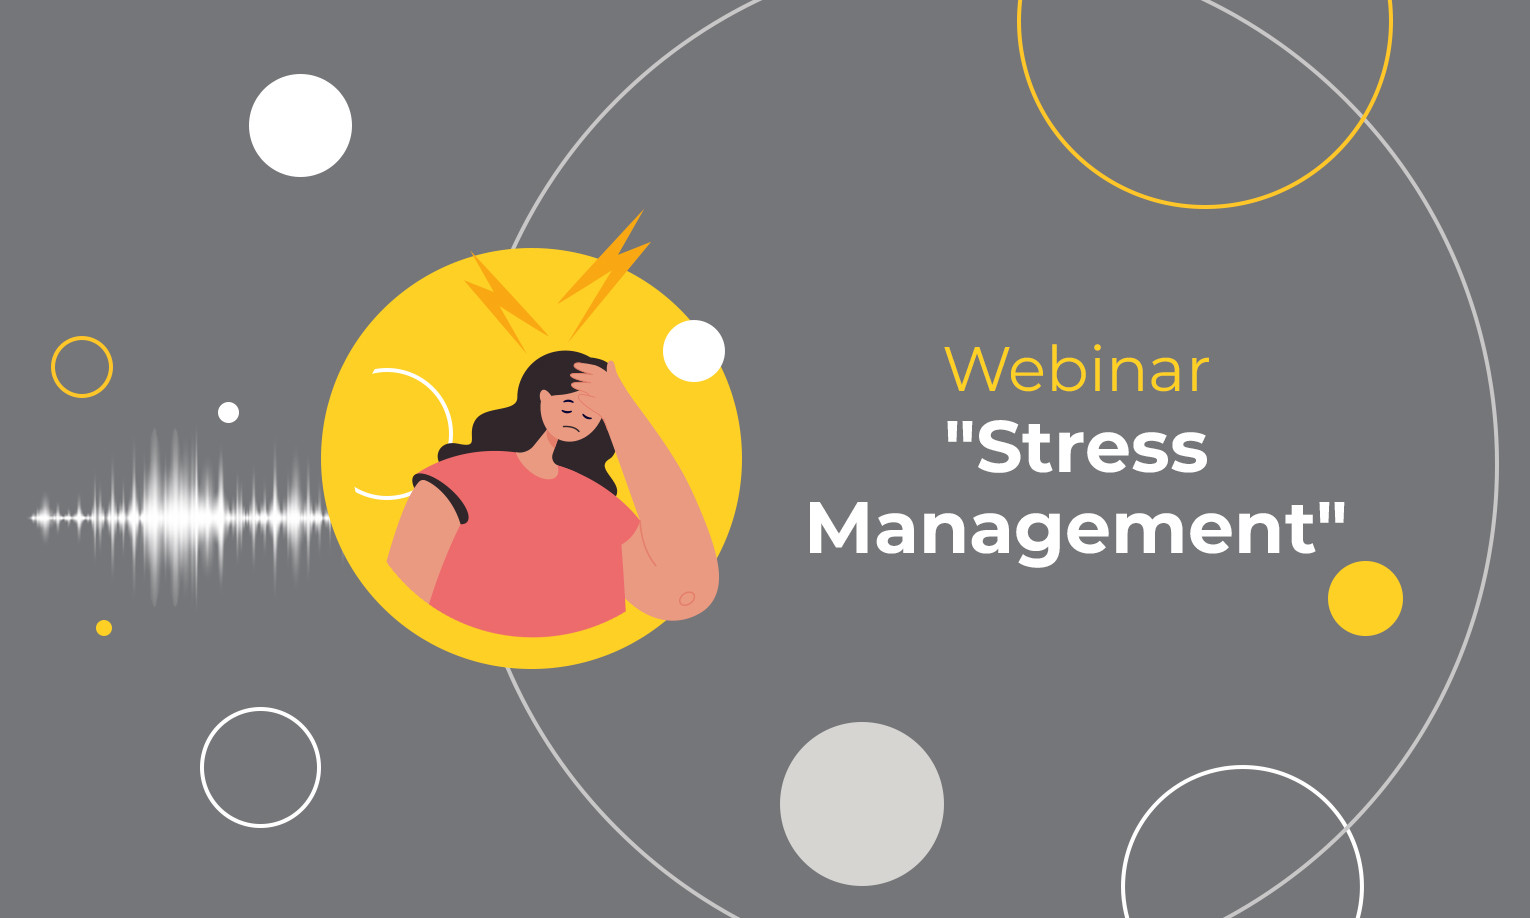 Webinar Stress Management